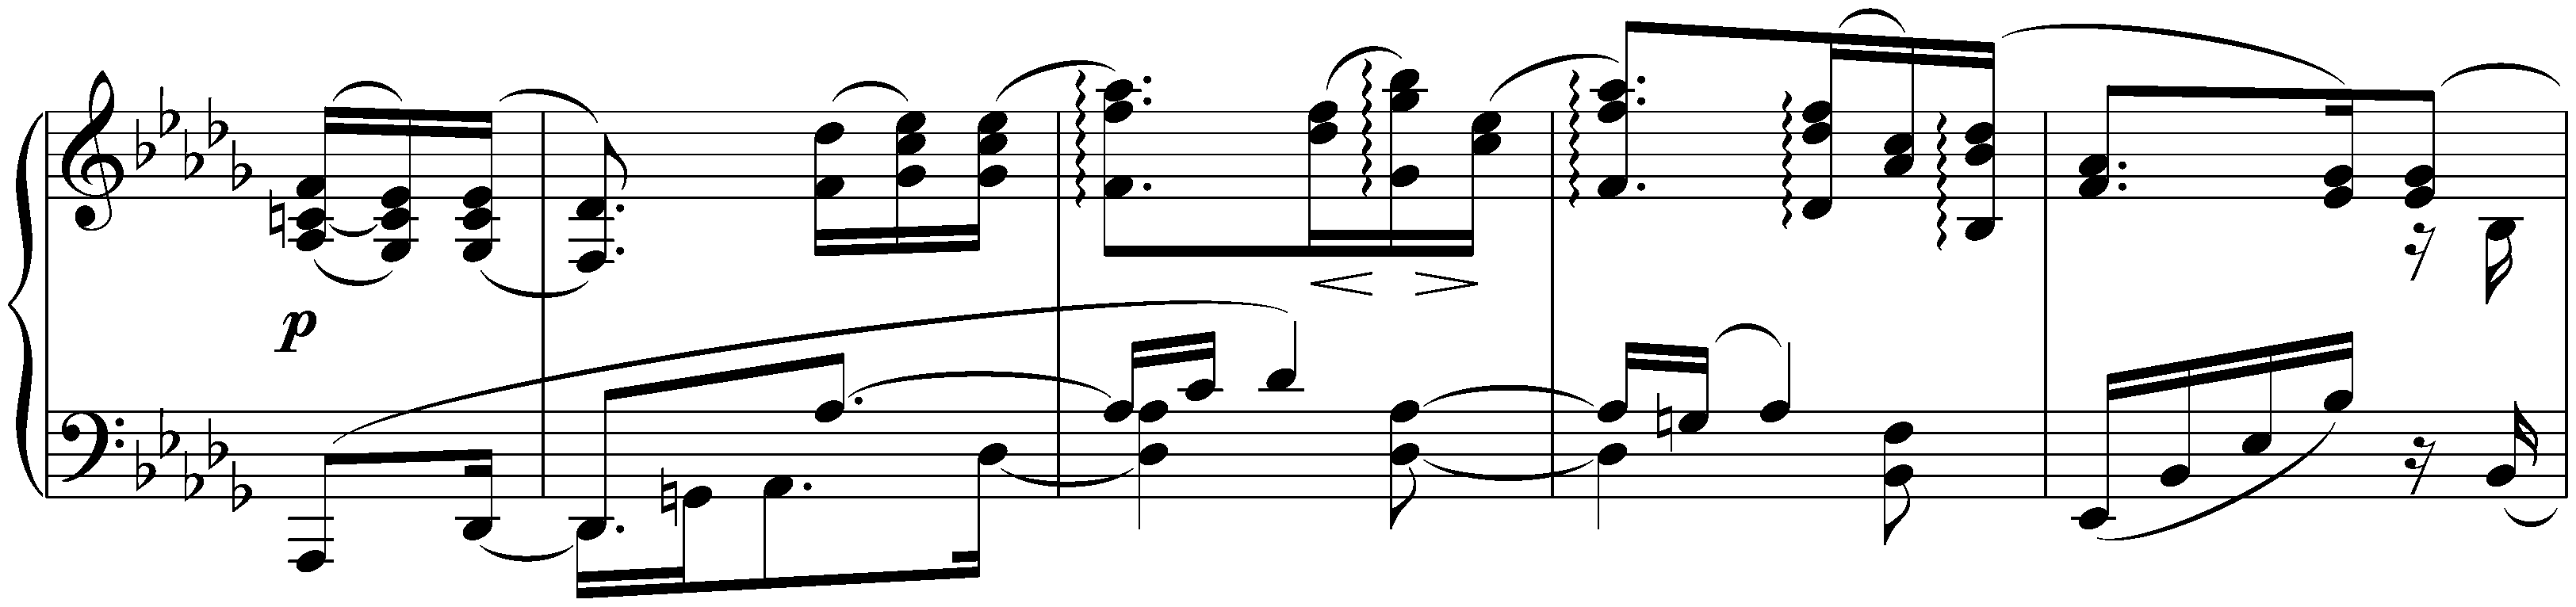 Three Intermezzi, op. 117; 2. B-flat minor